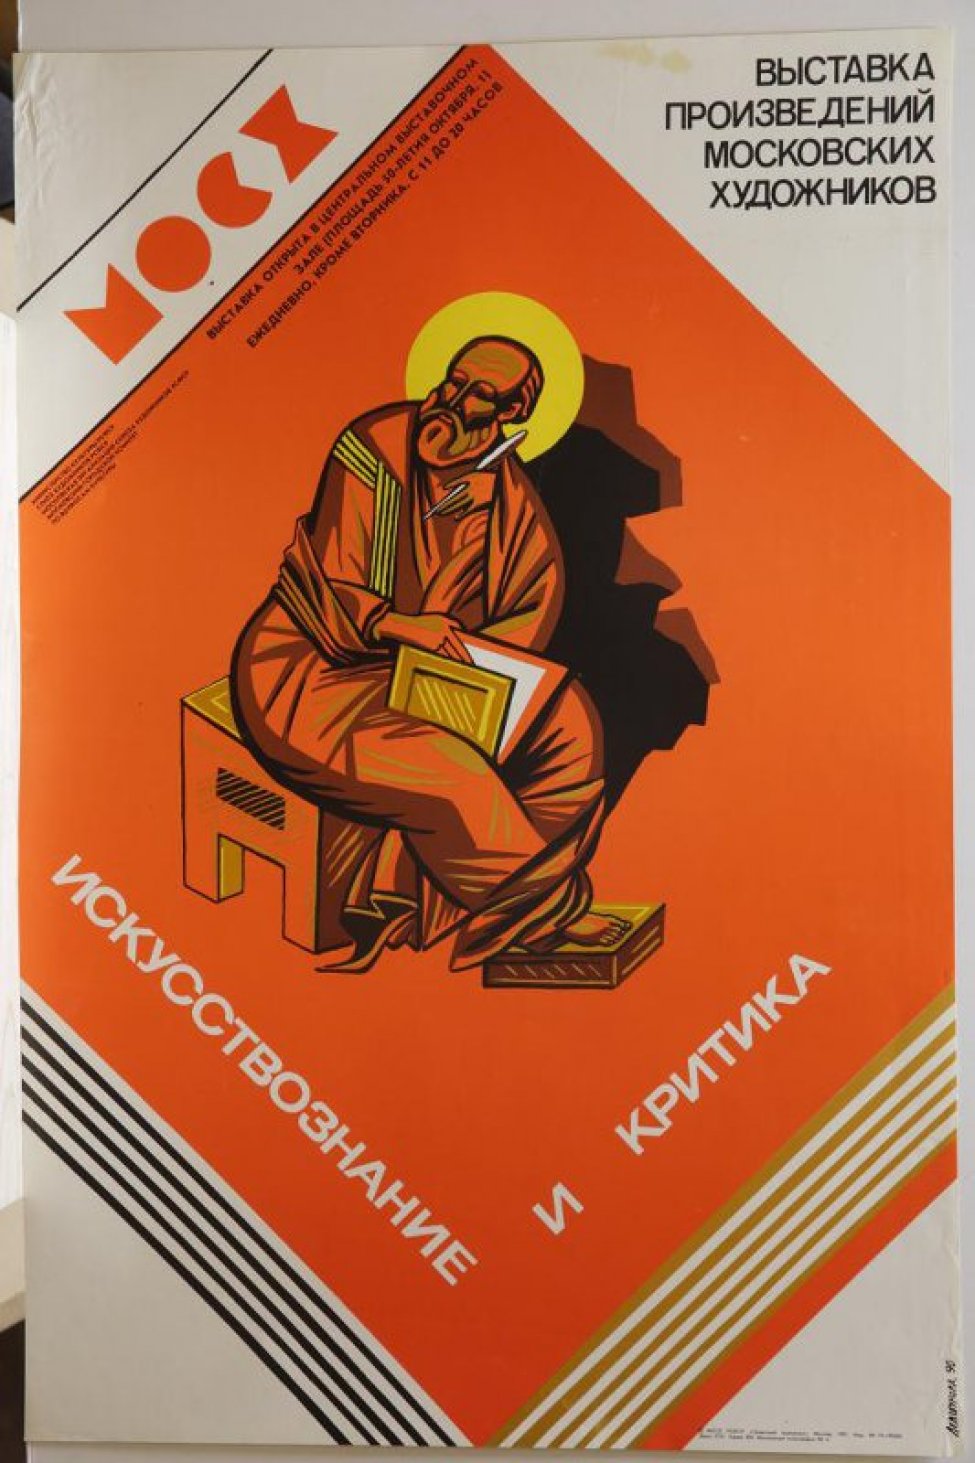 В центре композиции на красном фоне изображен евангелист, сидящий на скамейке с книгой и пером в руках.